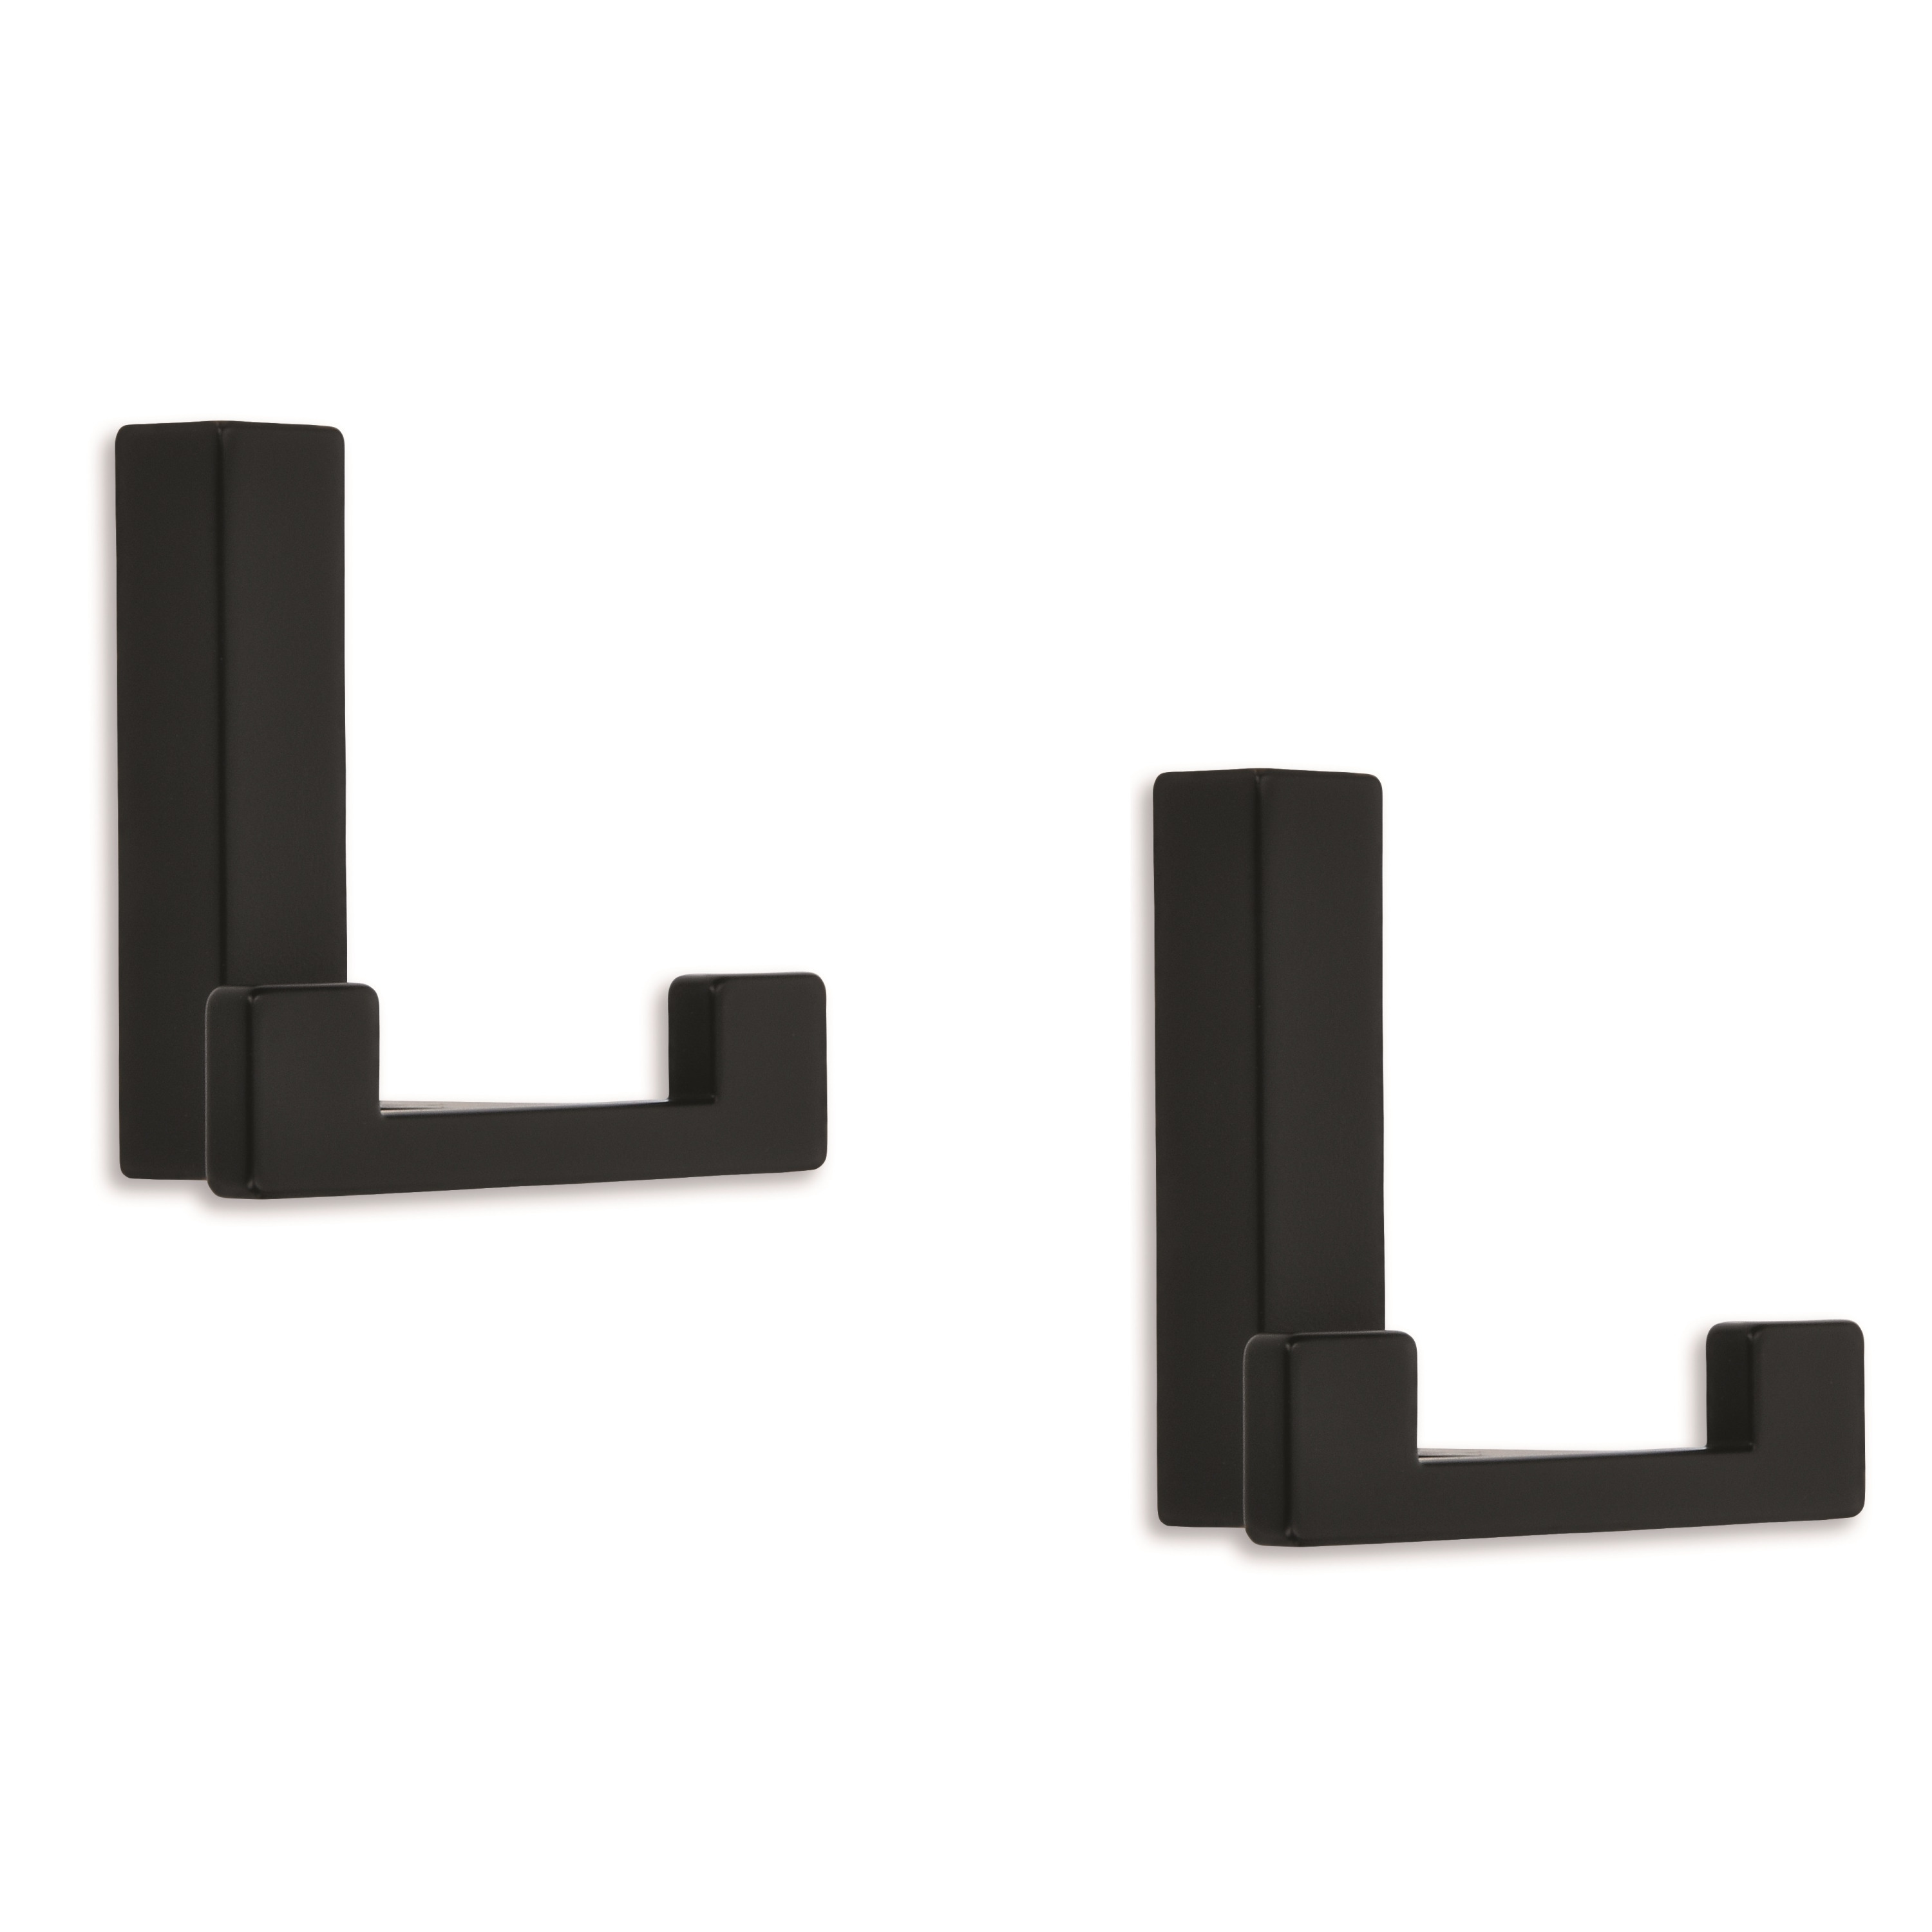 2x Luxe kapstokhaken-jashaken-kapstokhaakjes metaal modern zwart dubbele haak 4 x 6,1 cm